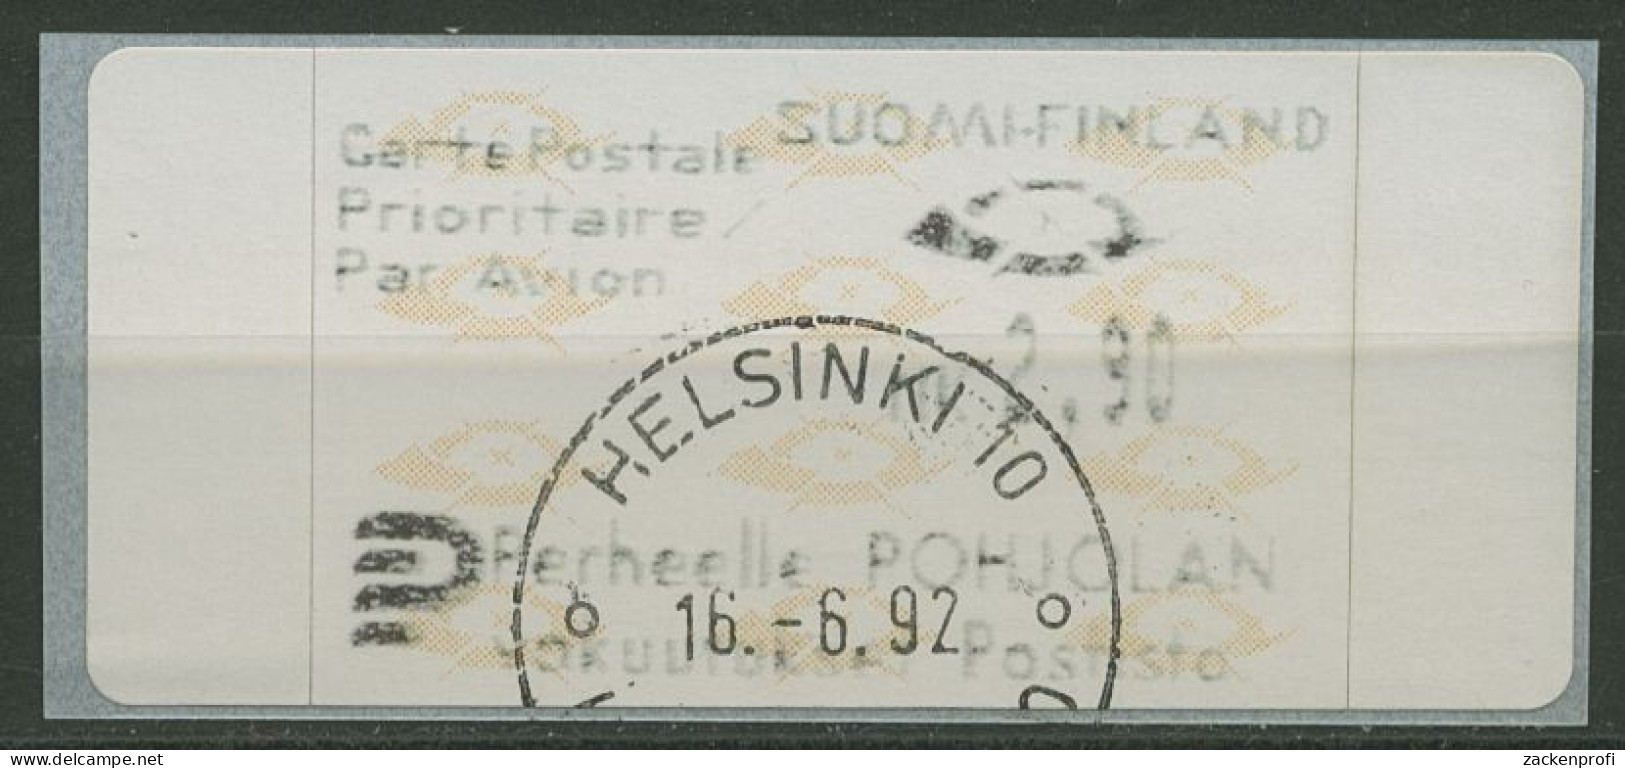 Finnland Automatenmarken 1992 Posthörner Einzelwert ATM 12.3 Z3 Gestempelt - Automatenmarken [ATM]